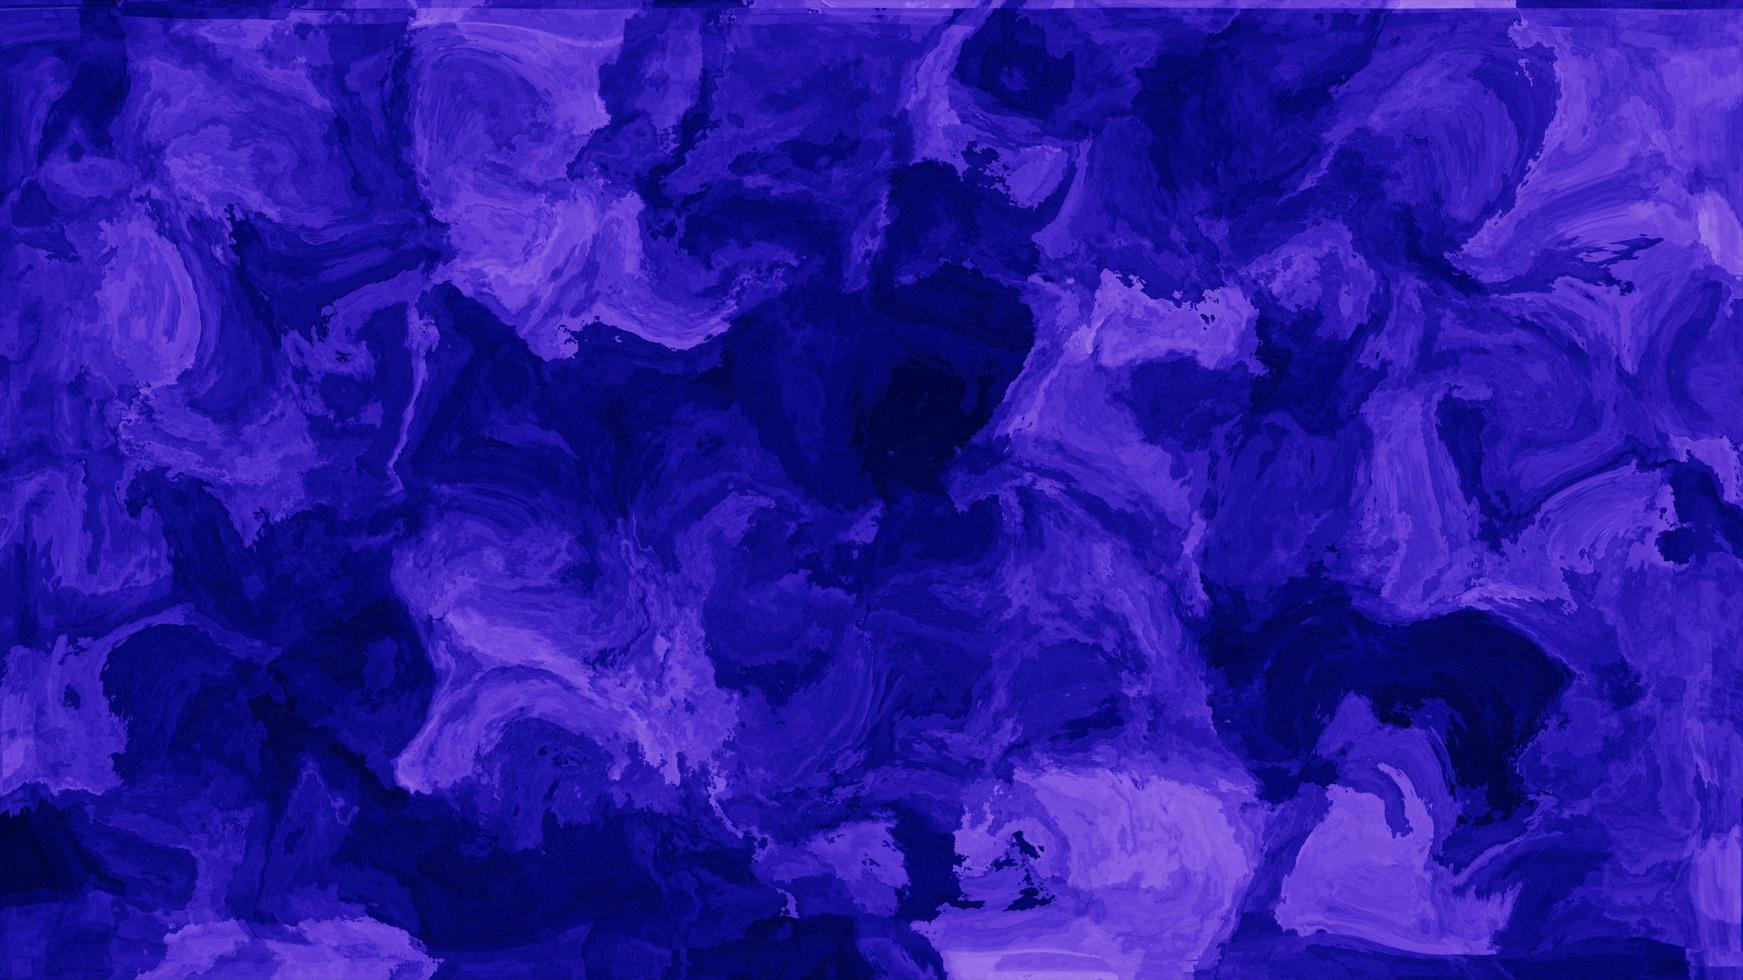 blauw water kleur papier glimmend ruimte brand deeltje poeder looping stromen animatie voor abstract kunst fantasie beweging zilver achtergrond foto